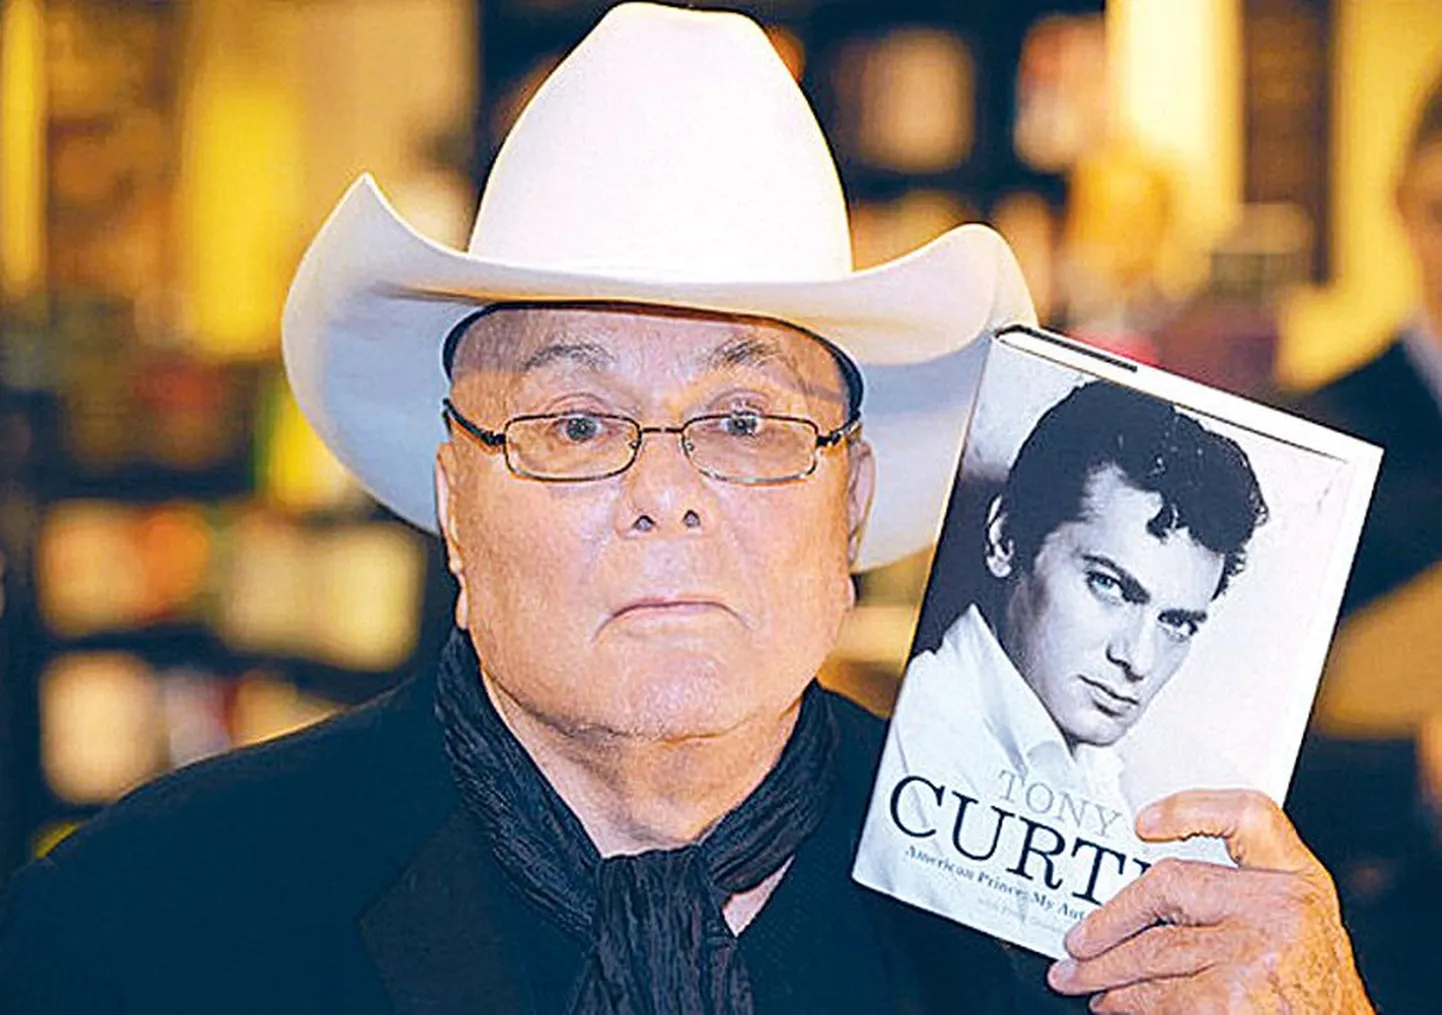 Tony Curtis eksponeerib oma autobiograafiat. Aasta on 2008.